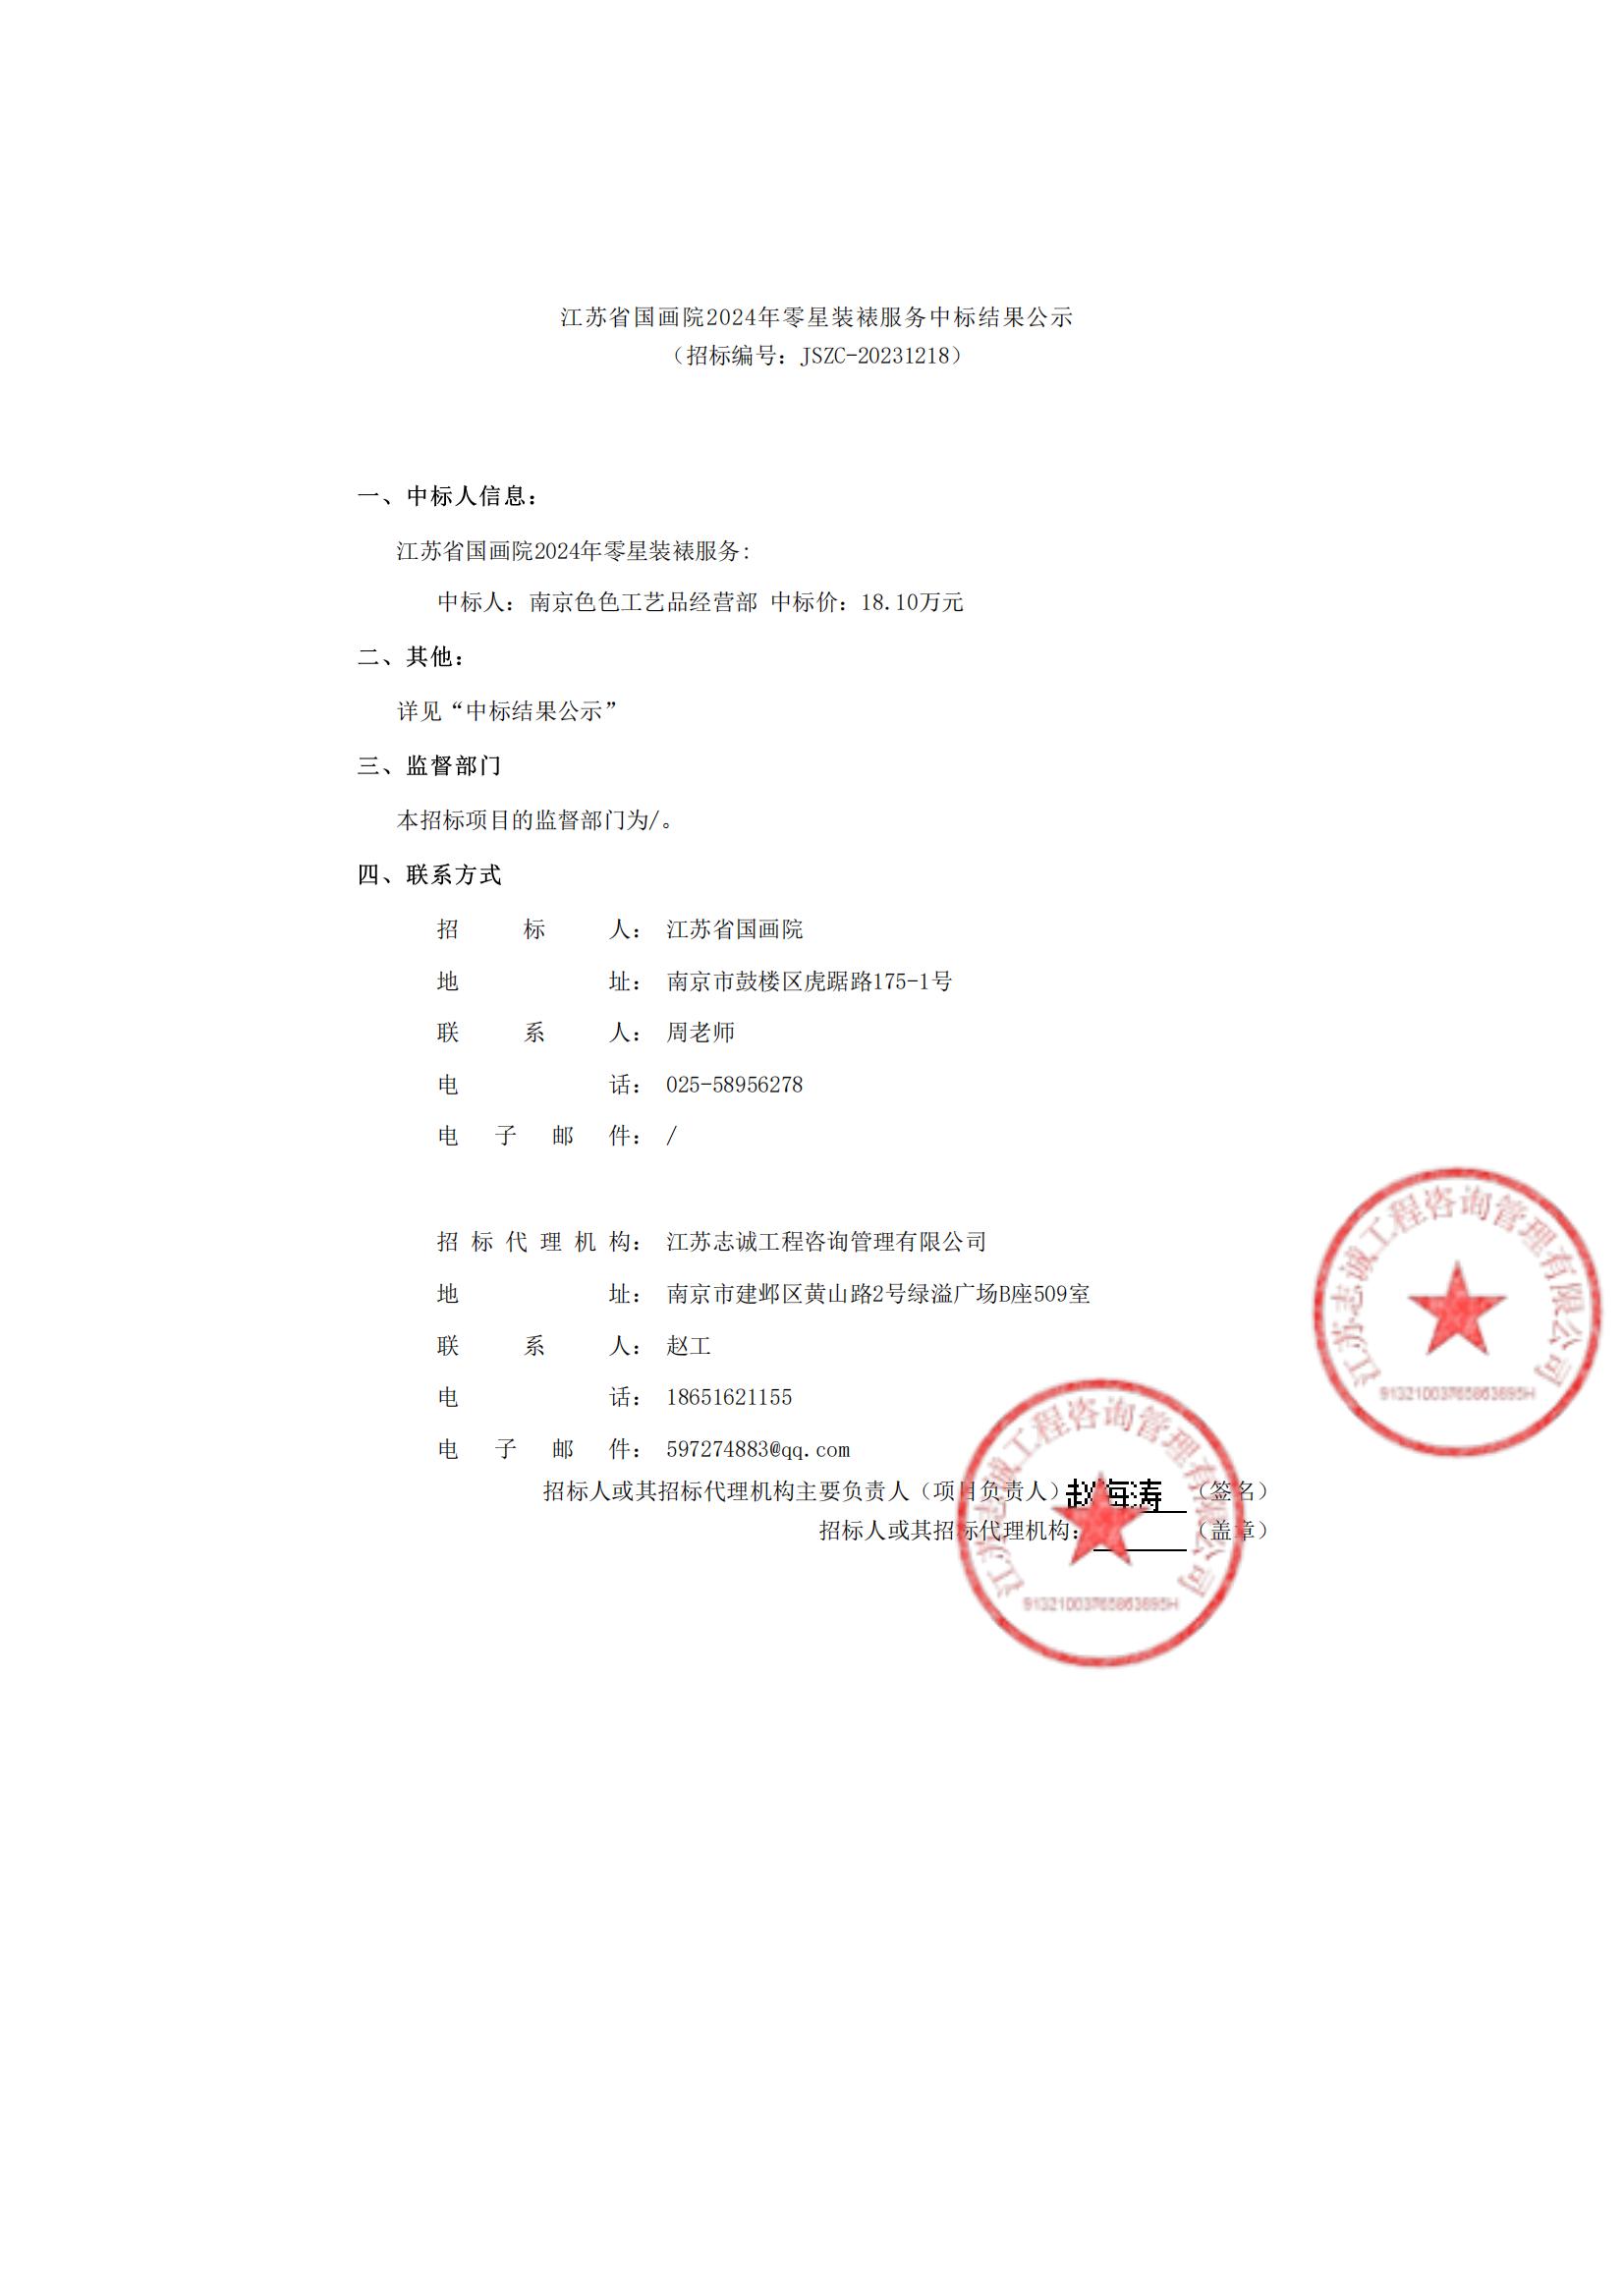 江苏省国画院2024年零星装裱服务中标结果公示_00.jpg